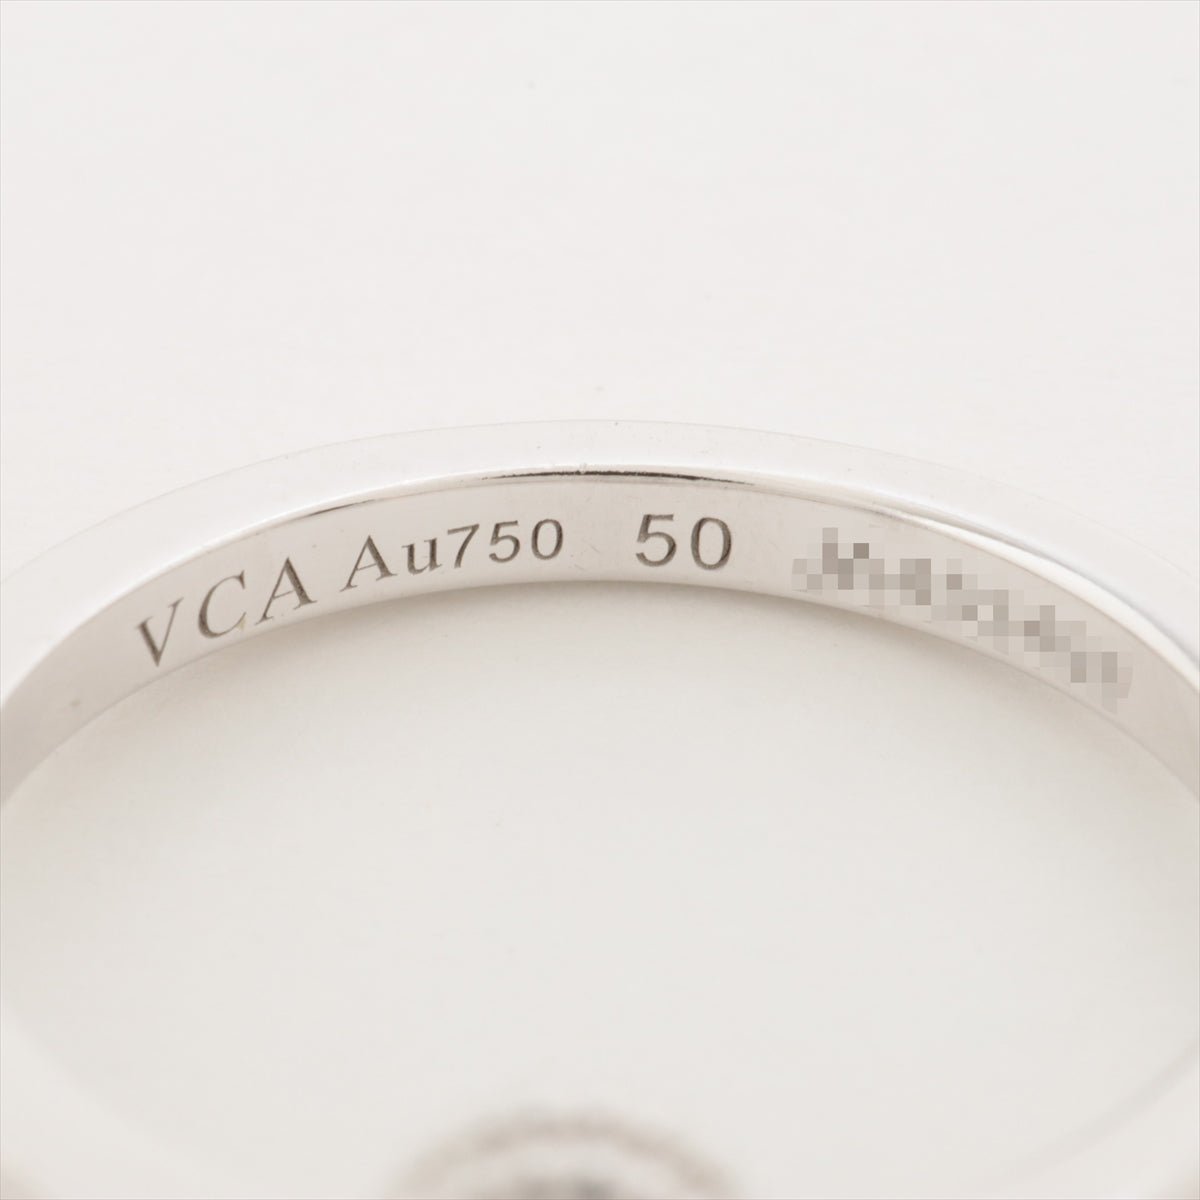 ヴァンクリーフ&アーペル スウィートアルハンブラ ダイヤ リング 750(WG) 3.2g 50